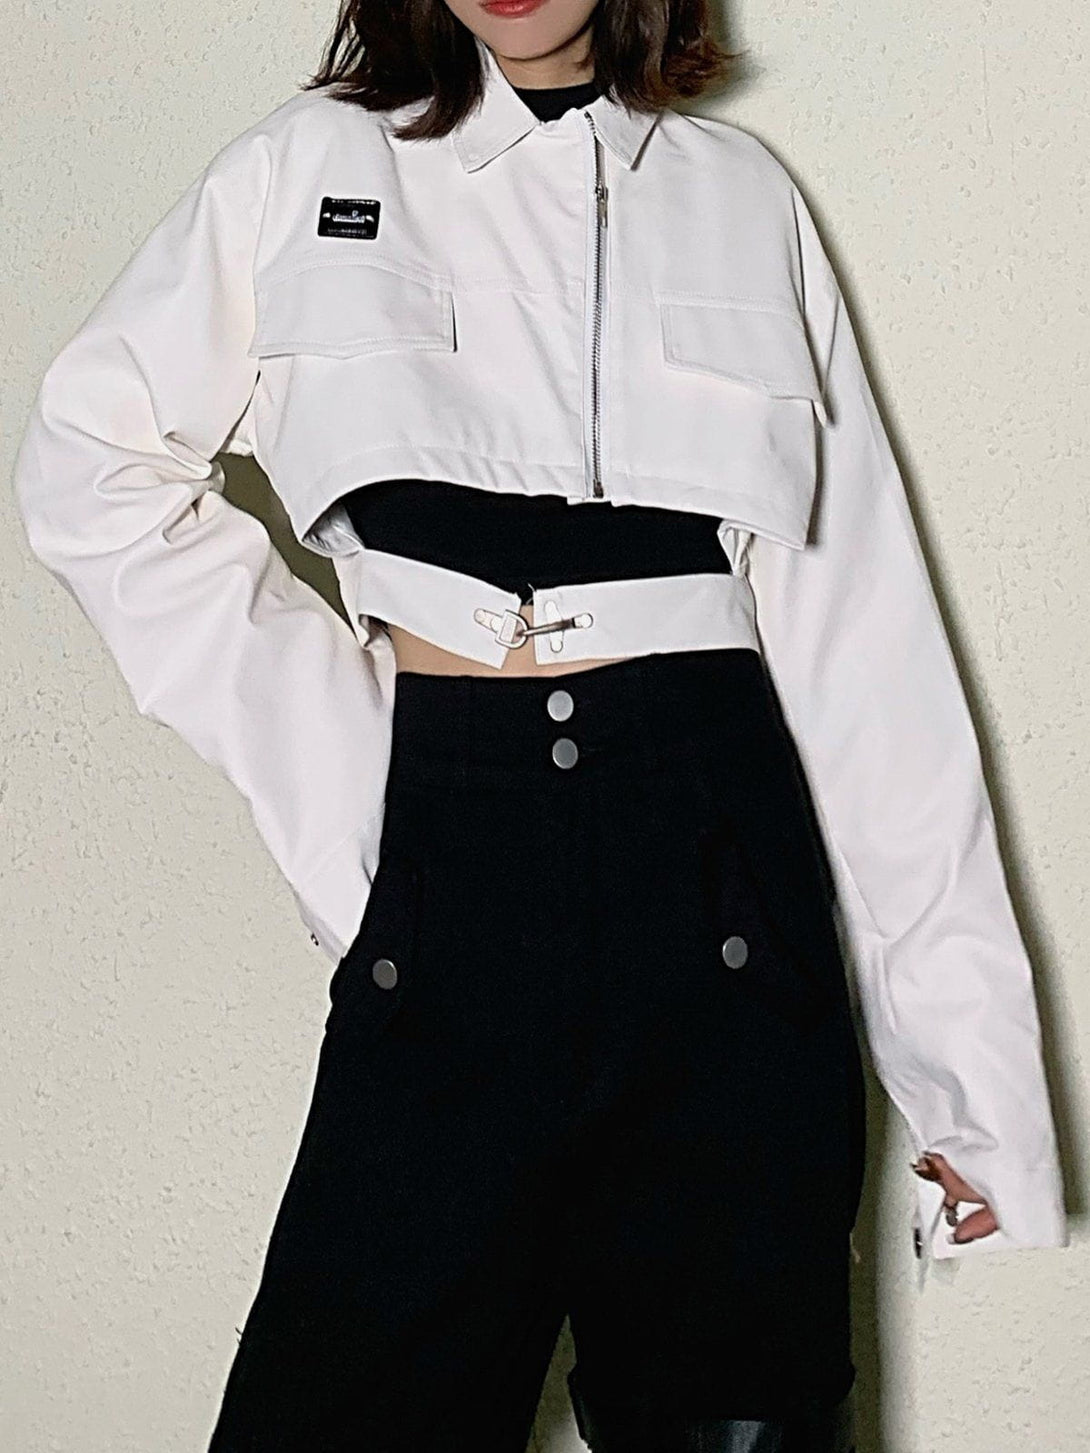 Levefly - Short PU Jacket - Streetwear Fashion - levefly.com